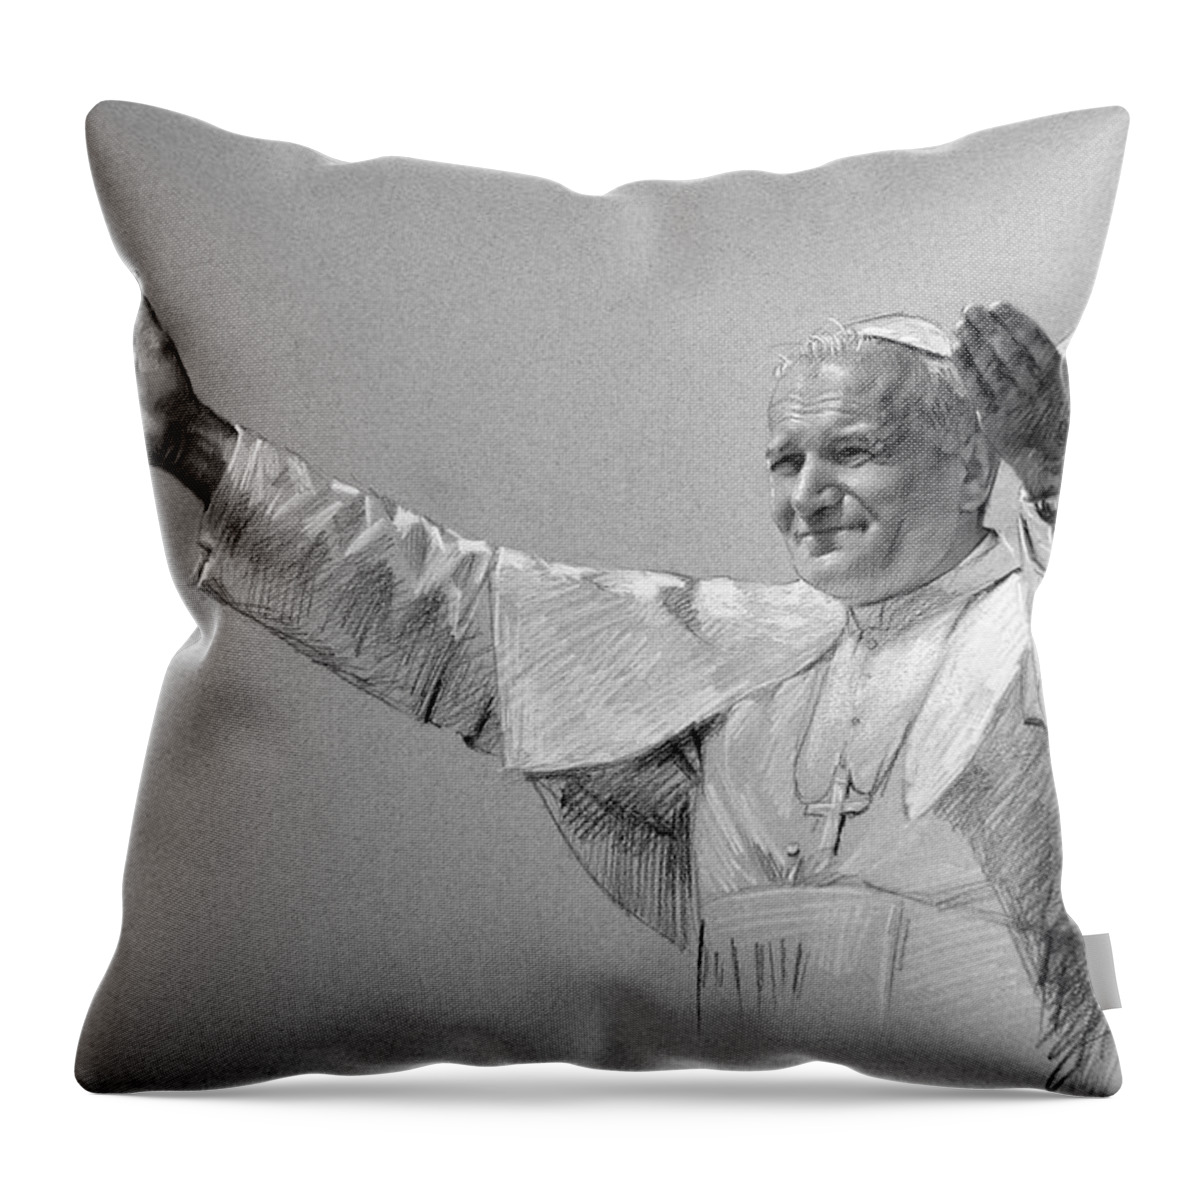 Pope John Paul Ii Throw Pillow featuring the drawing POPE JOHN PAUL II bw by Ylli Haruni